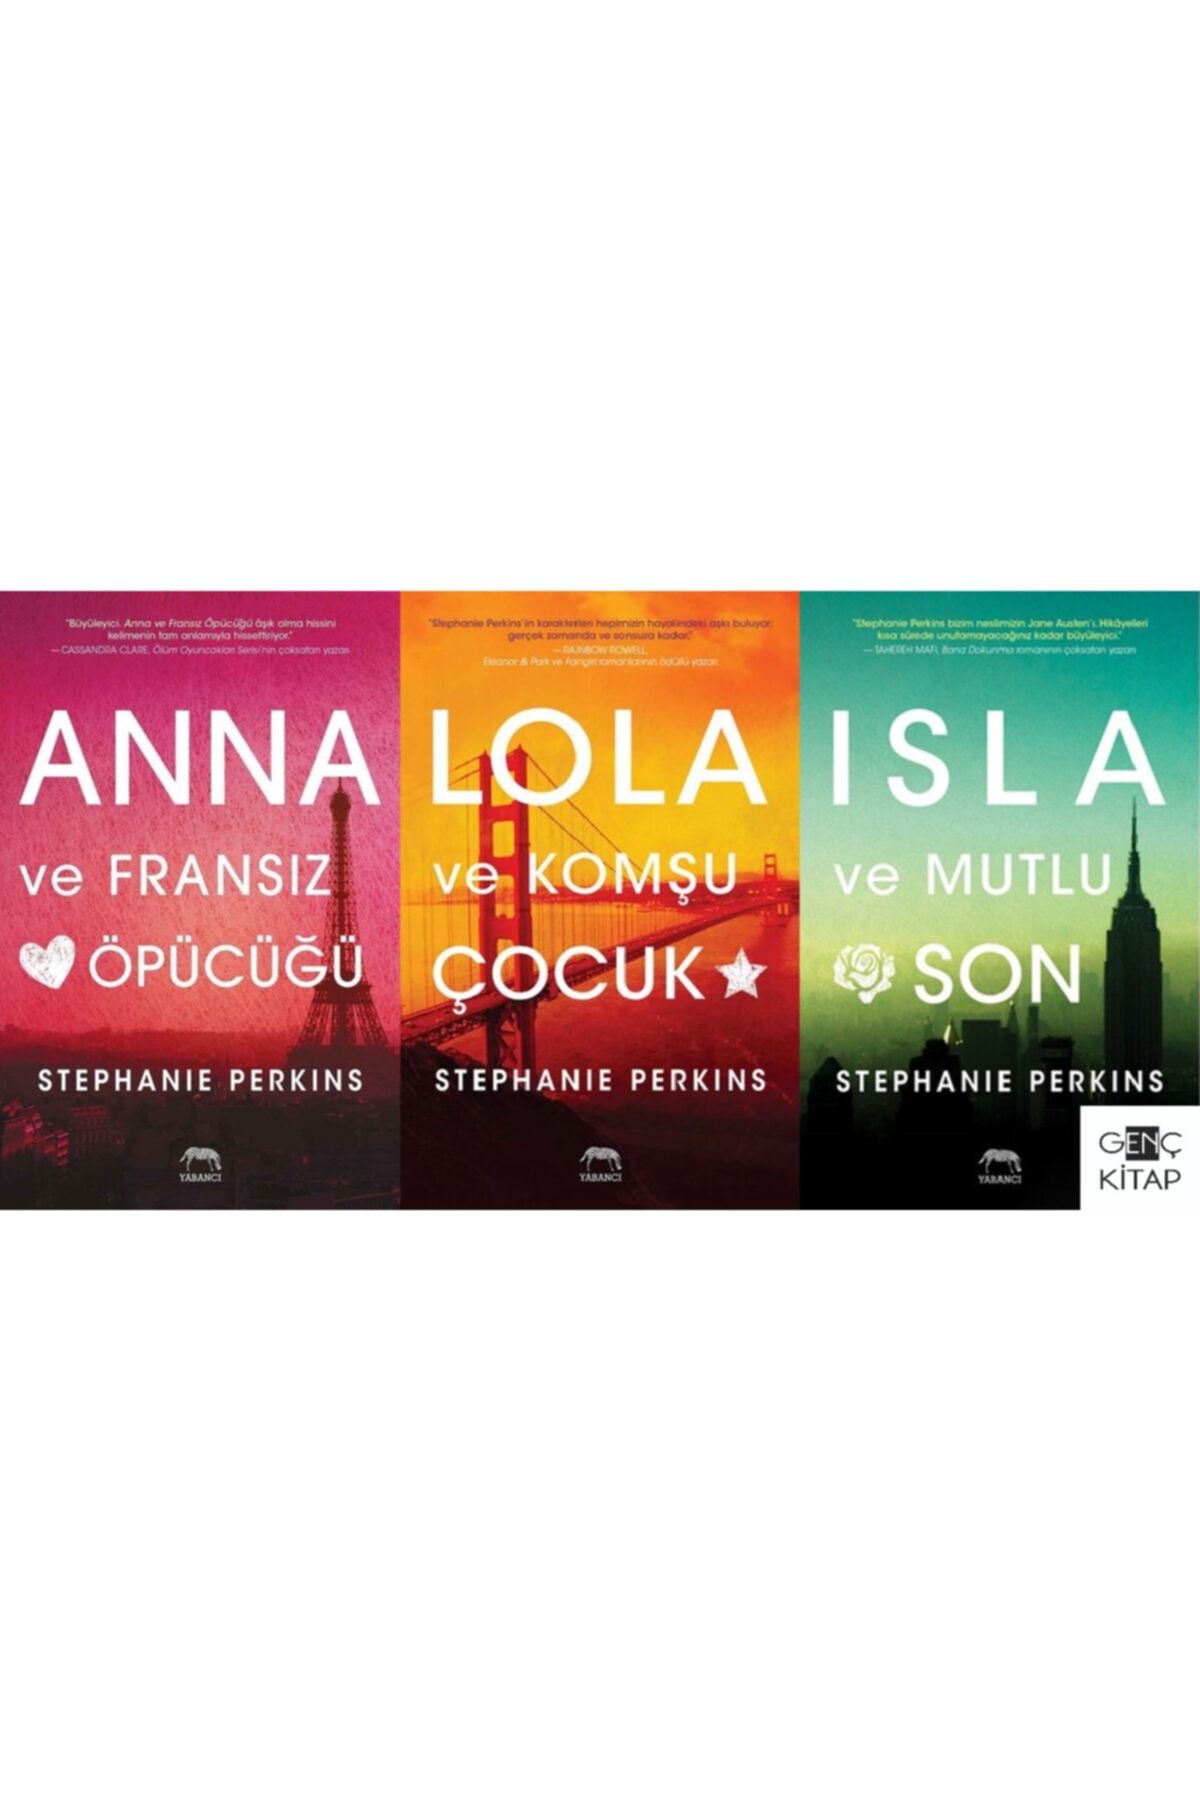 Yabancı Yayınları Anna Ve Fransız Öpücüğü 3 Kitap Set Lola Ve Komşu Çocuk Isla Ve Mutlu Son Stephanıe Perkıns